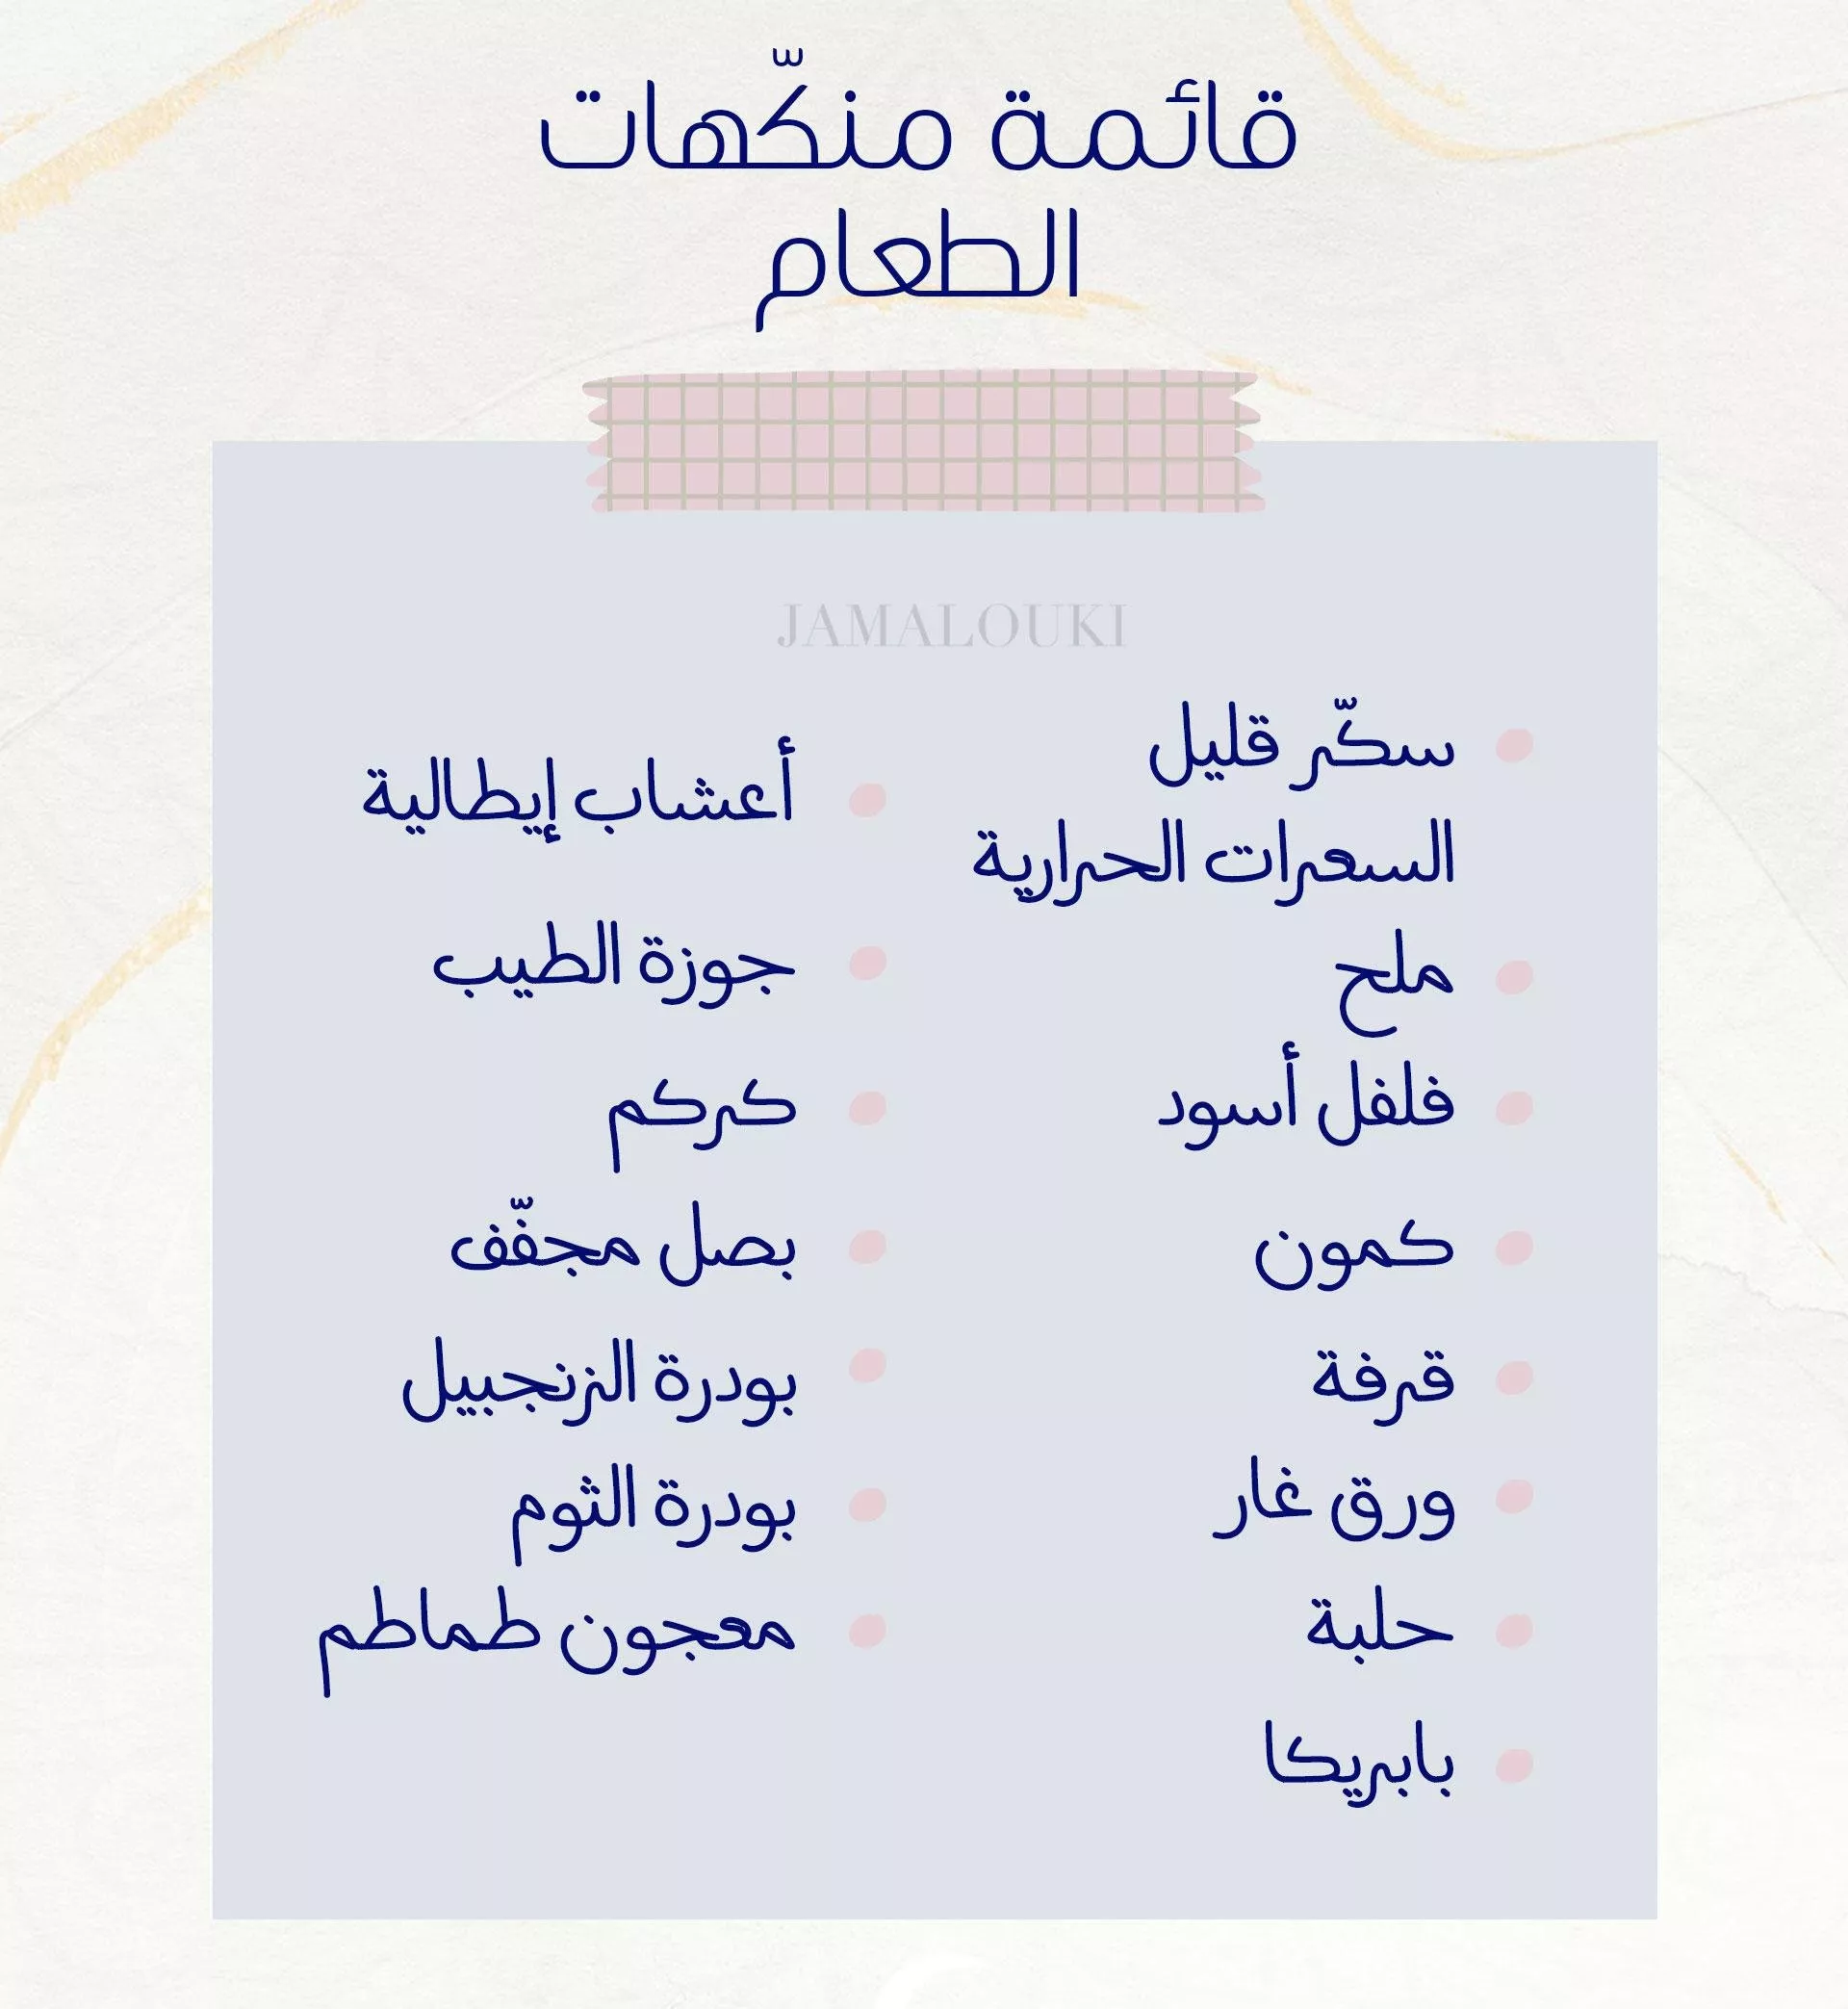 قائمة بأهمّ مقاضي رمضان الصحية: دوّني كل ما تحتاجين إليه في هذا الشهر المبارك